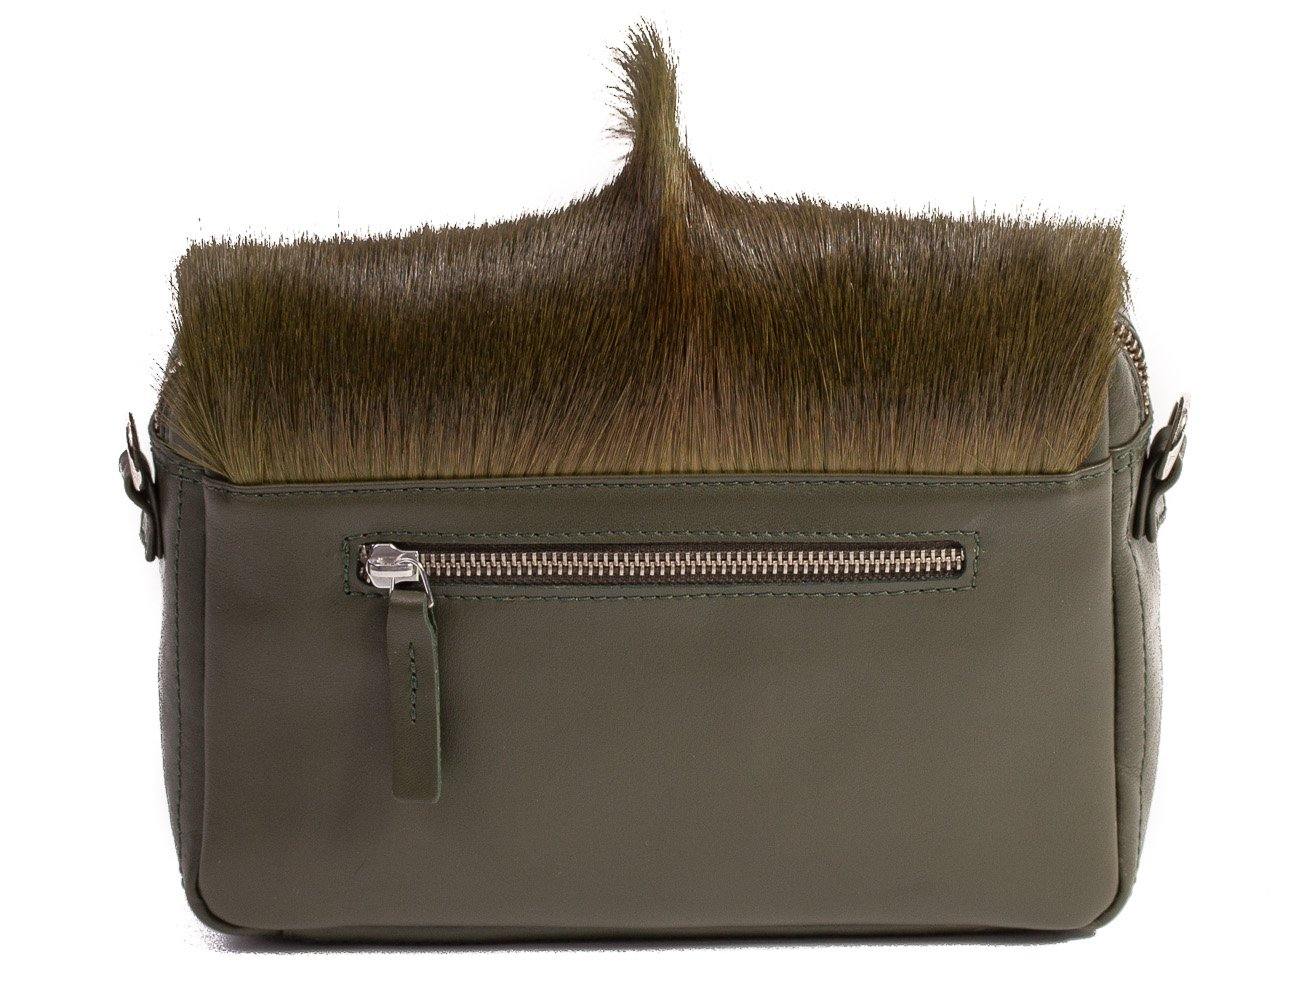 sherene melinda springbok hair-on-hide green leather shoulder bag Fan back